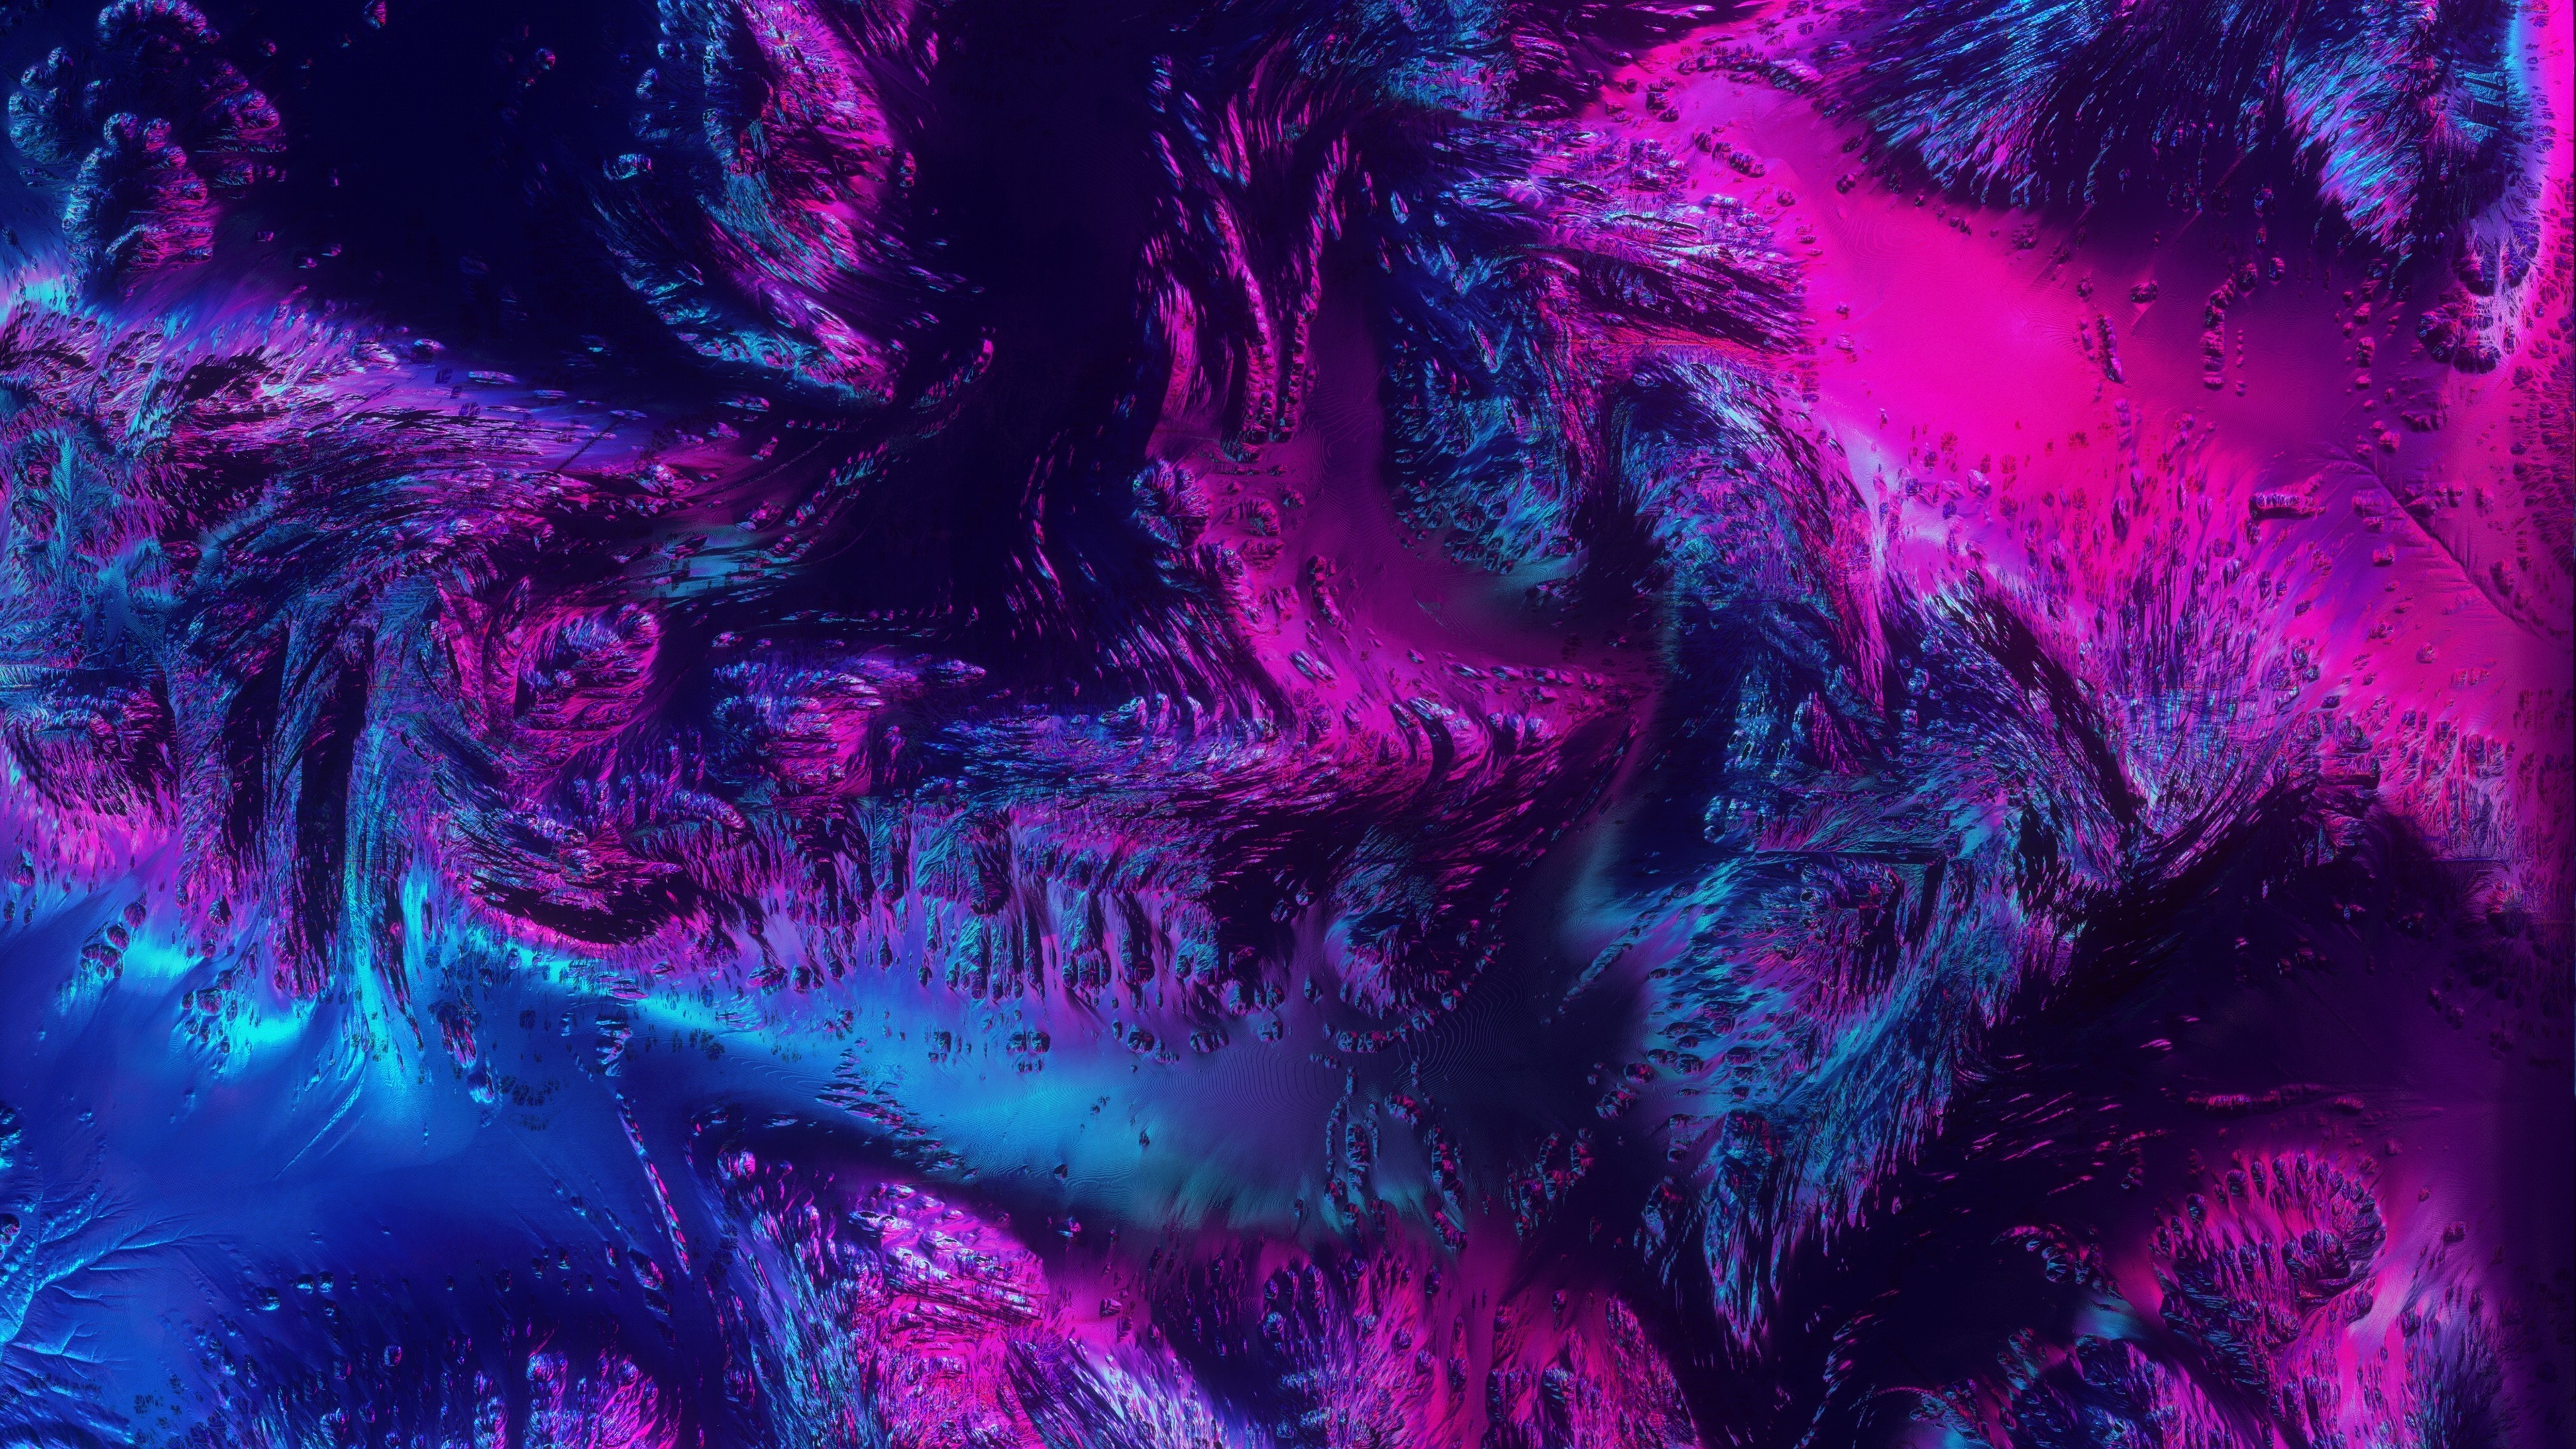 Download 3840x2160 wallpaper neon texture abstract dark 